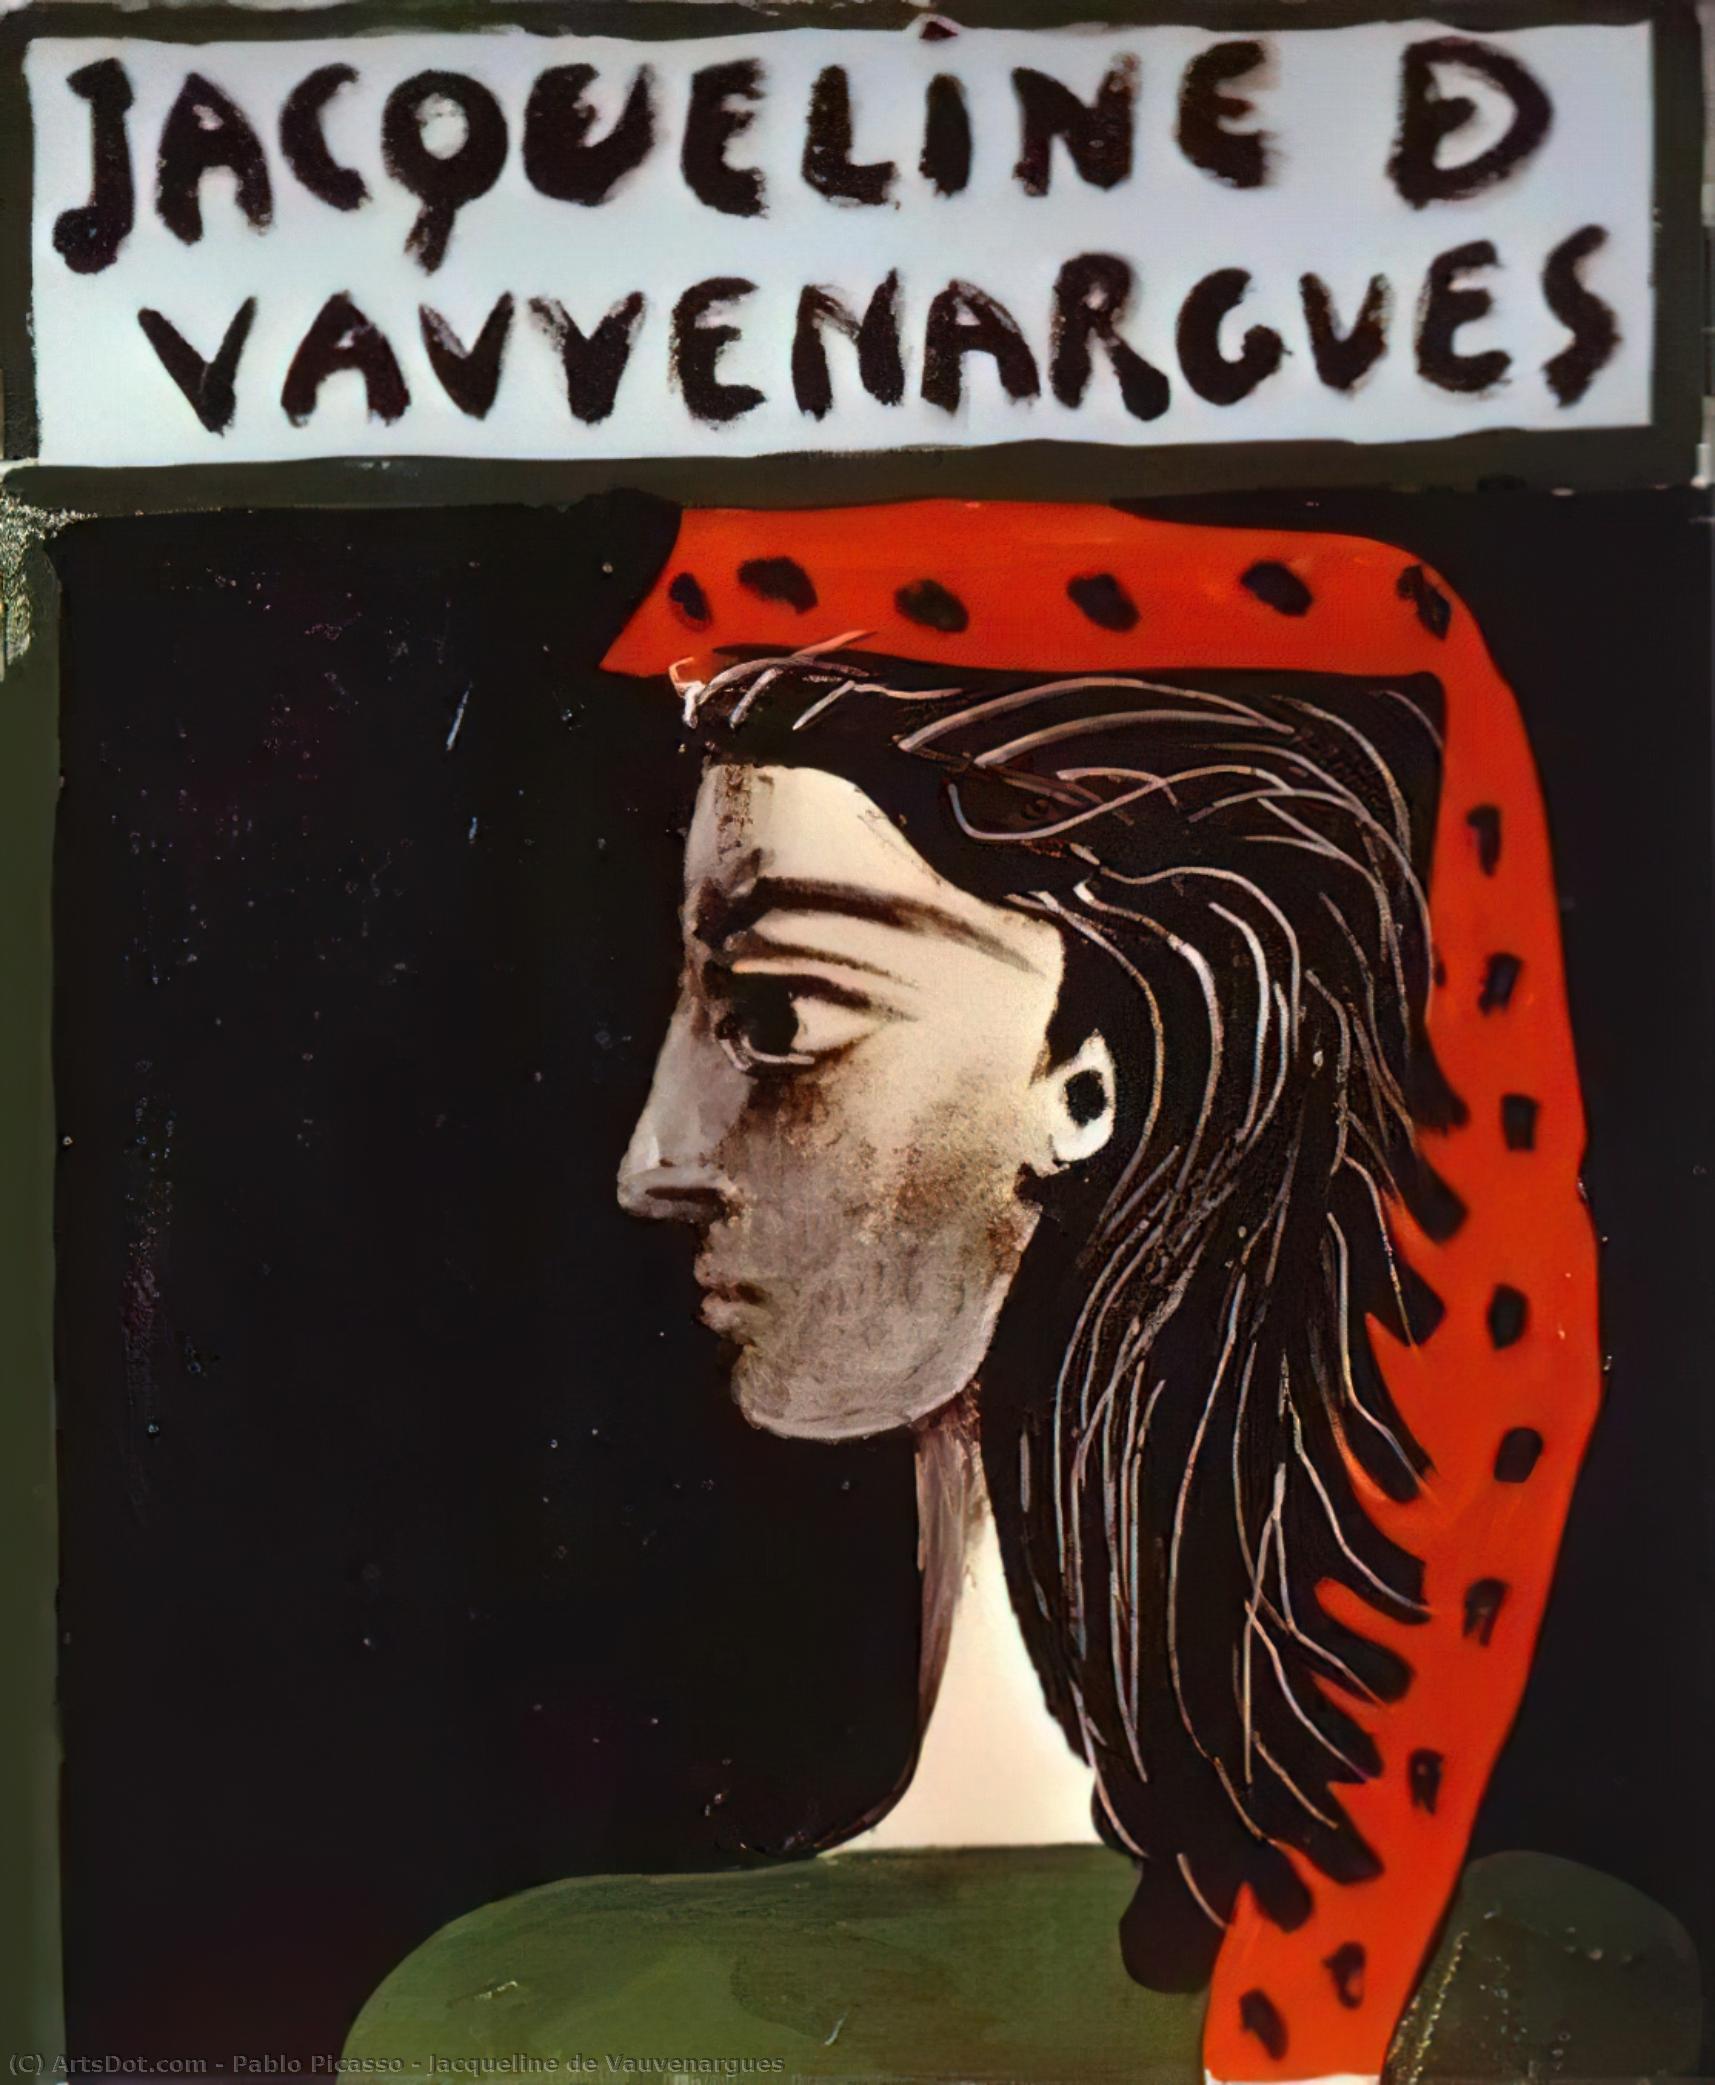 WikiOO.org - Encyclopedia of Fine Arts - Maleri, Artwork Pablo Picasso - Jacqueline de Vauvenargues